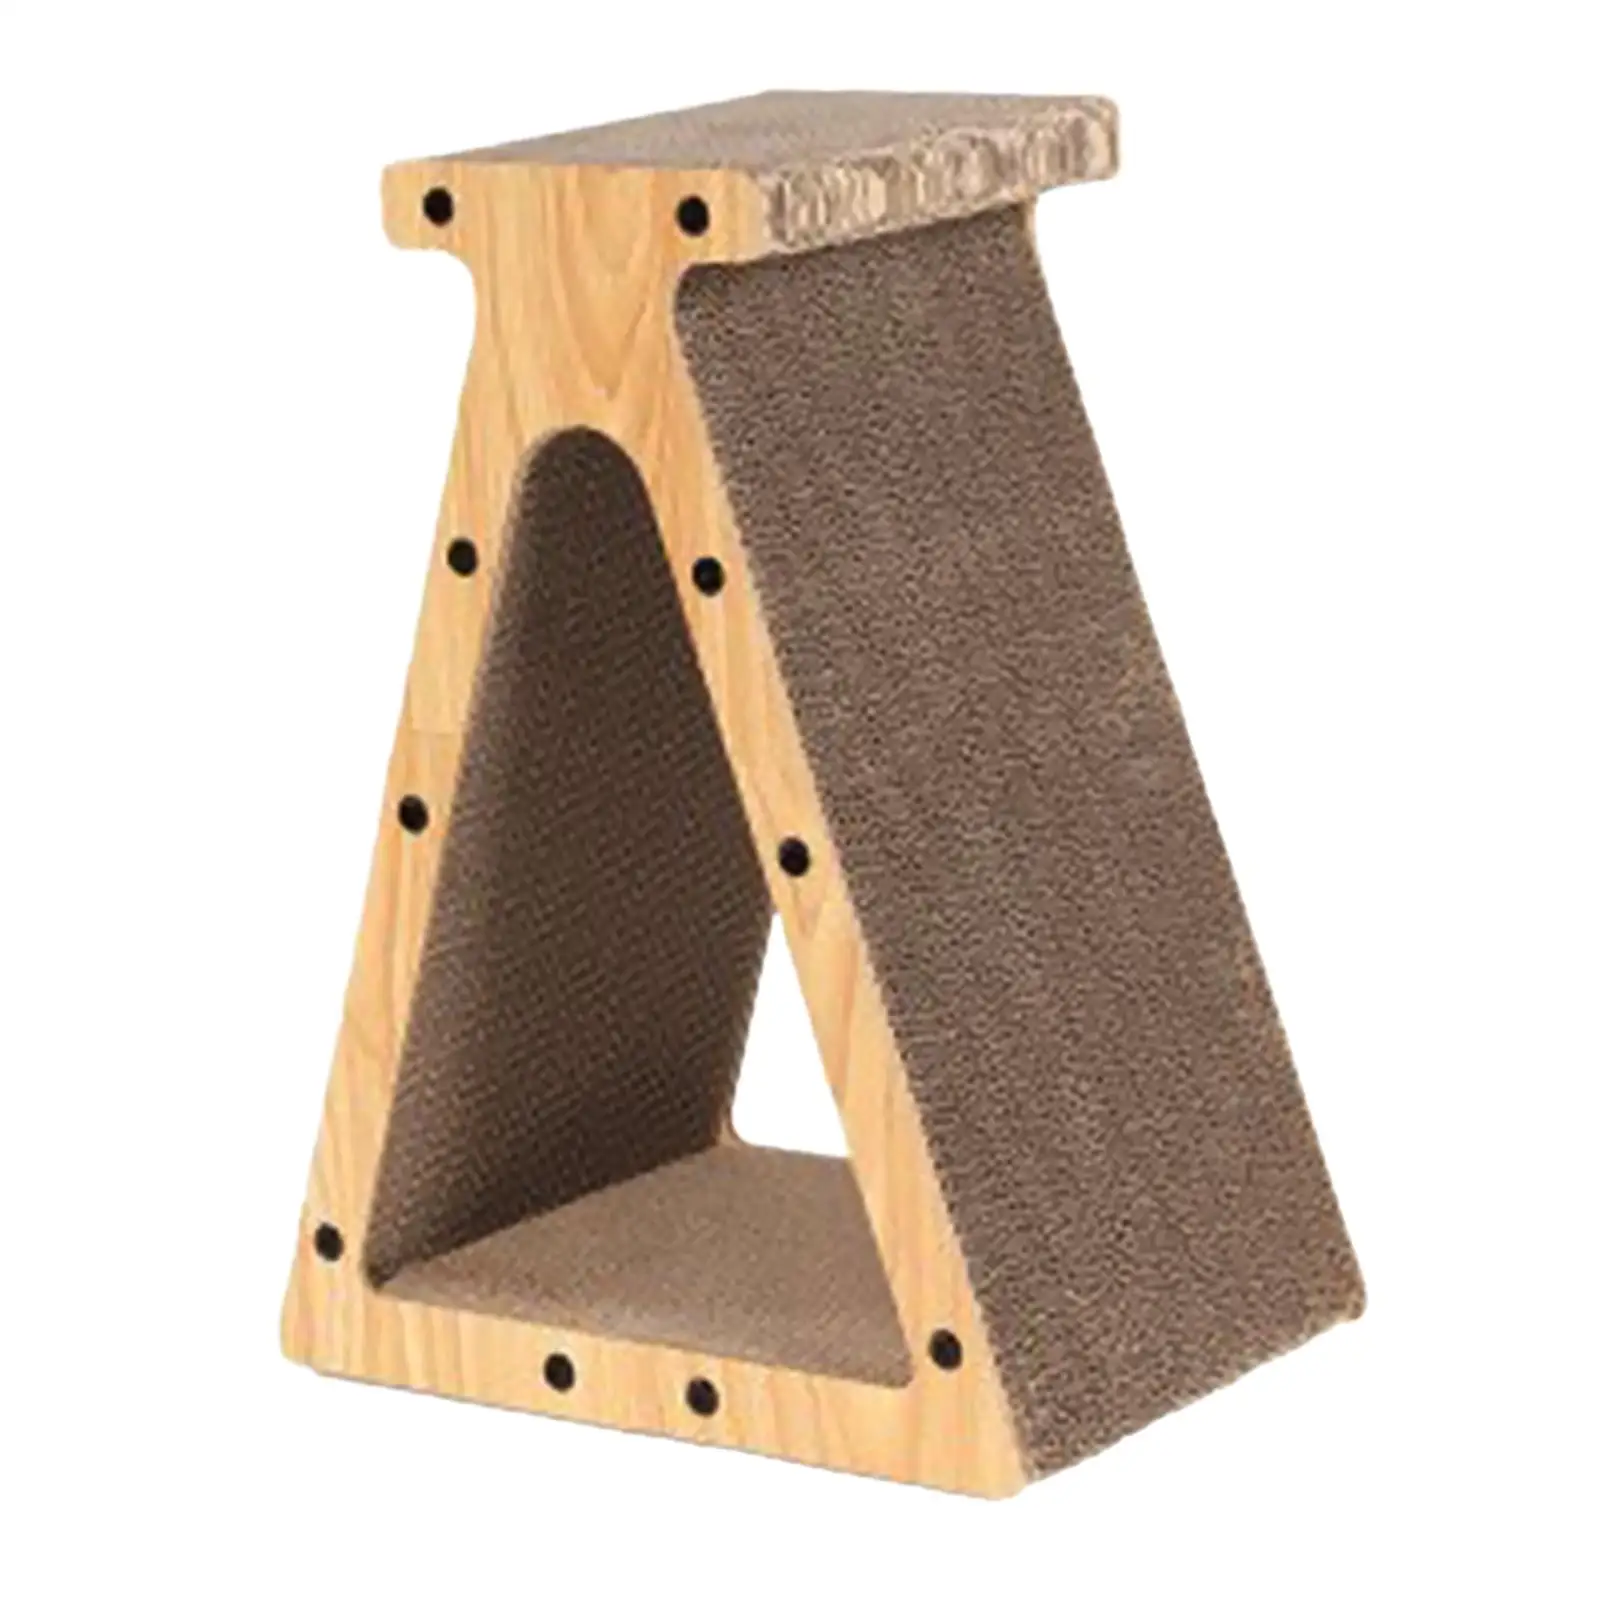 Corrugated Scratch Pad Sofa Cat Scratcher Cardboard for Furniture Protection